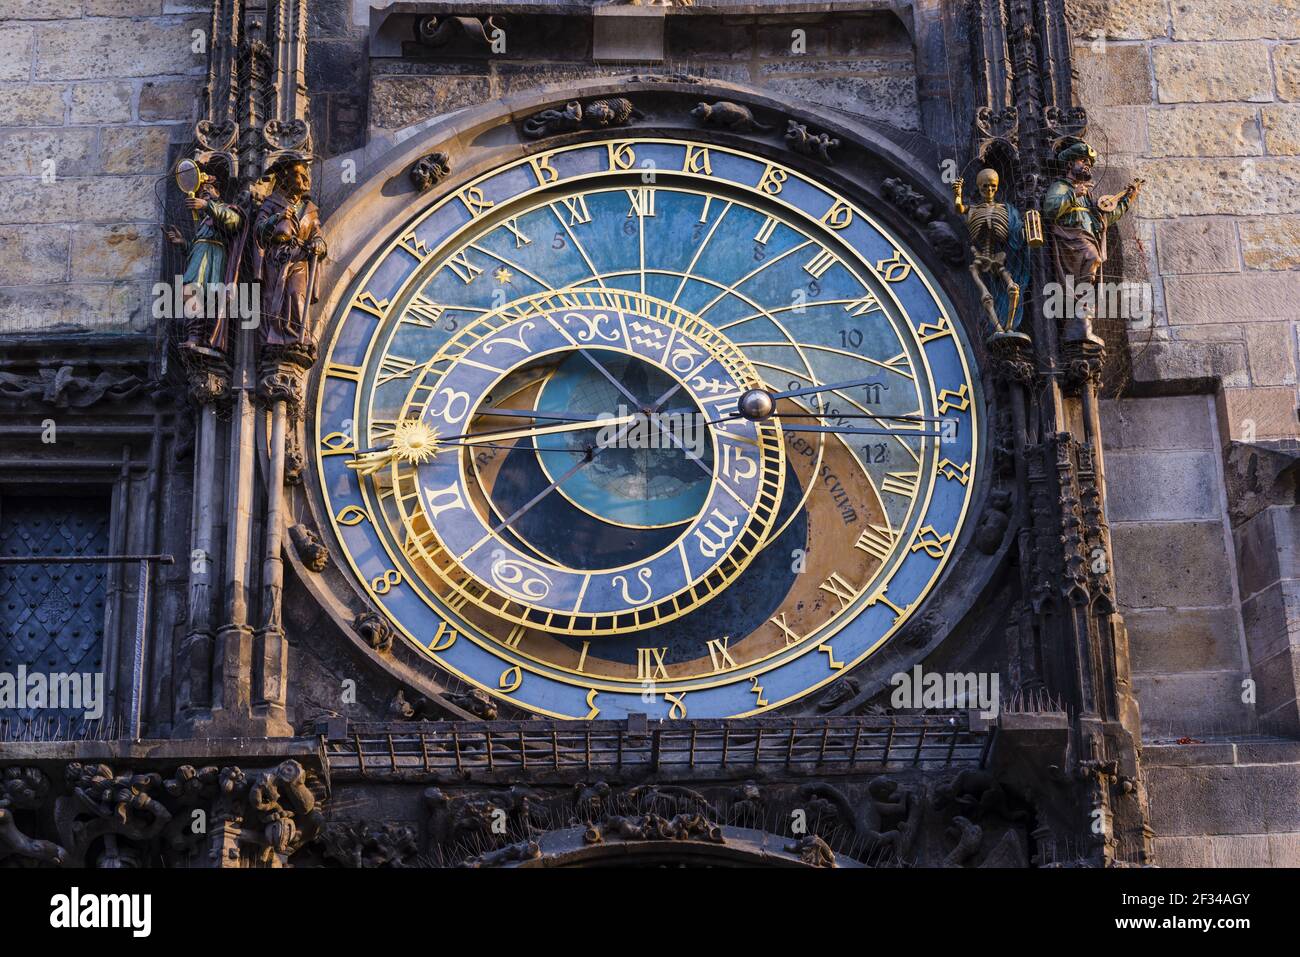 Geographie / Reisen, Tschechien, Böhmen, astronomische Uhr am Rathausturm, Altstädter Ring, Altstadt, Prag, Tschechien, Freiheit Des Panoramas Stockfoto